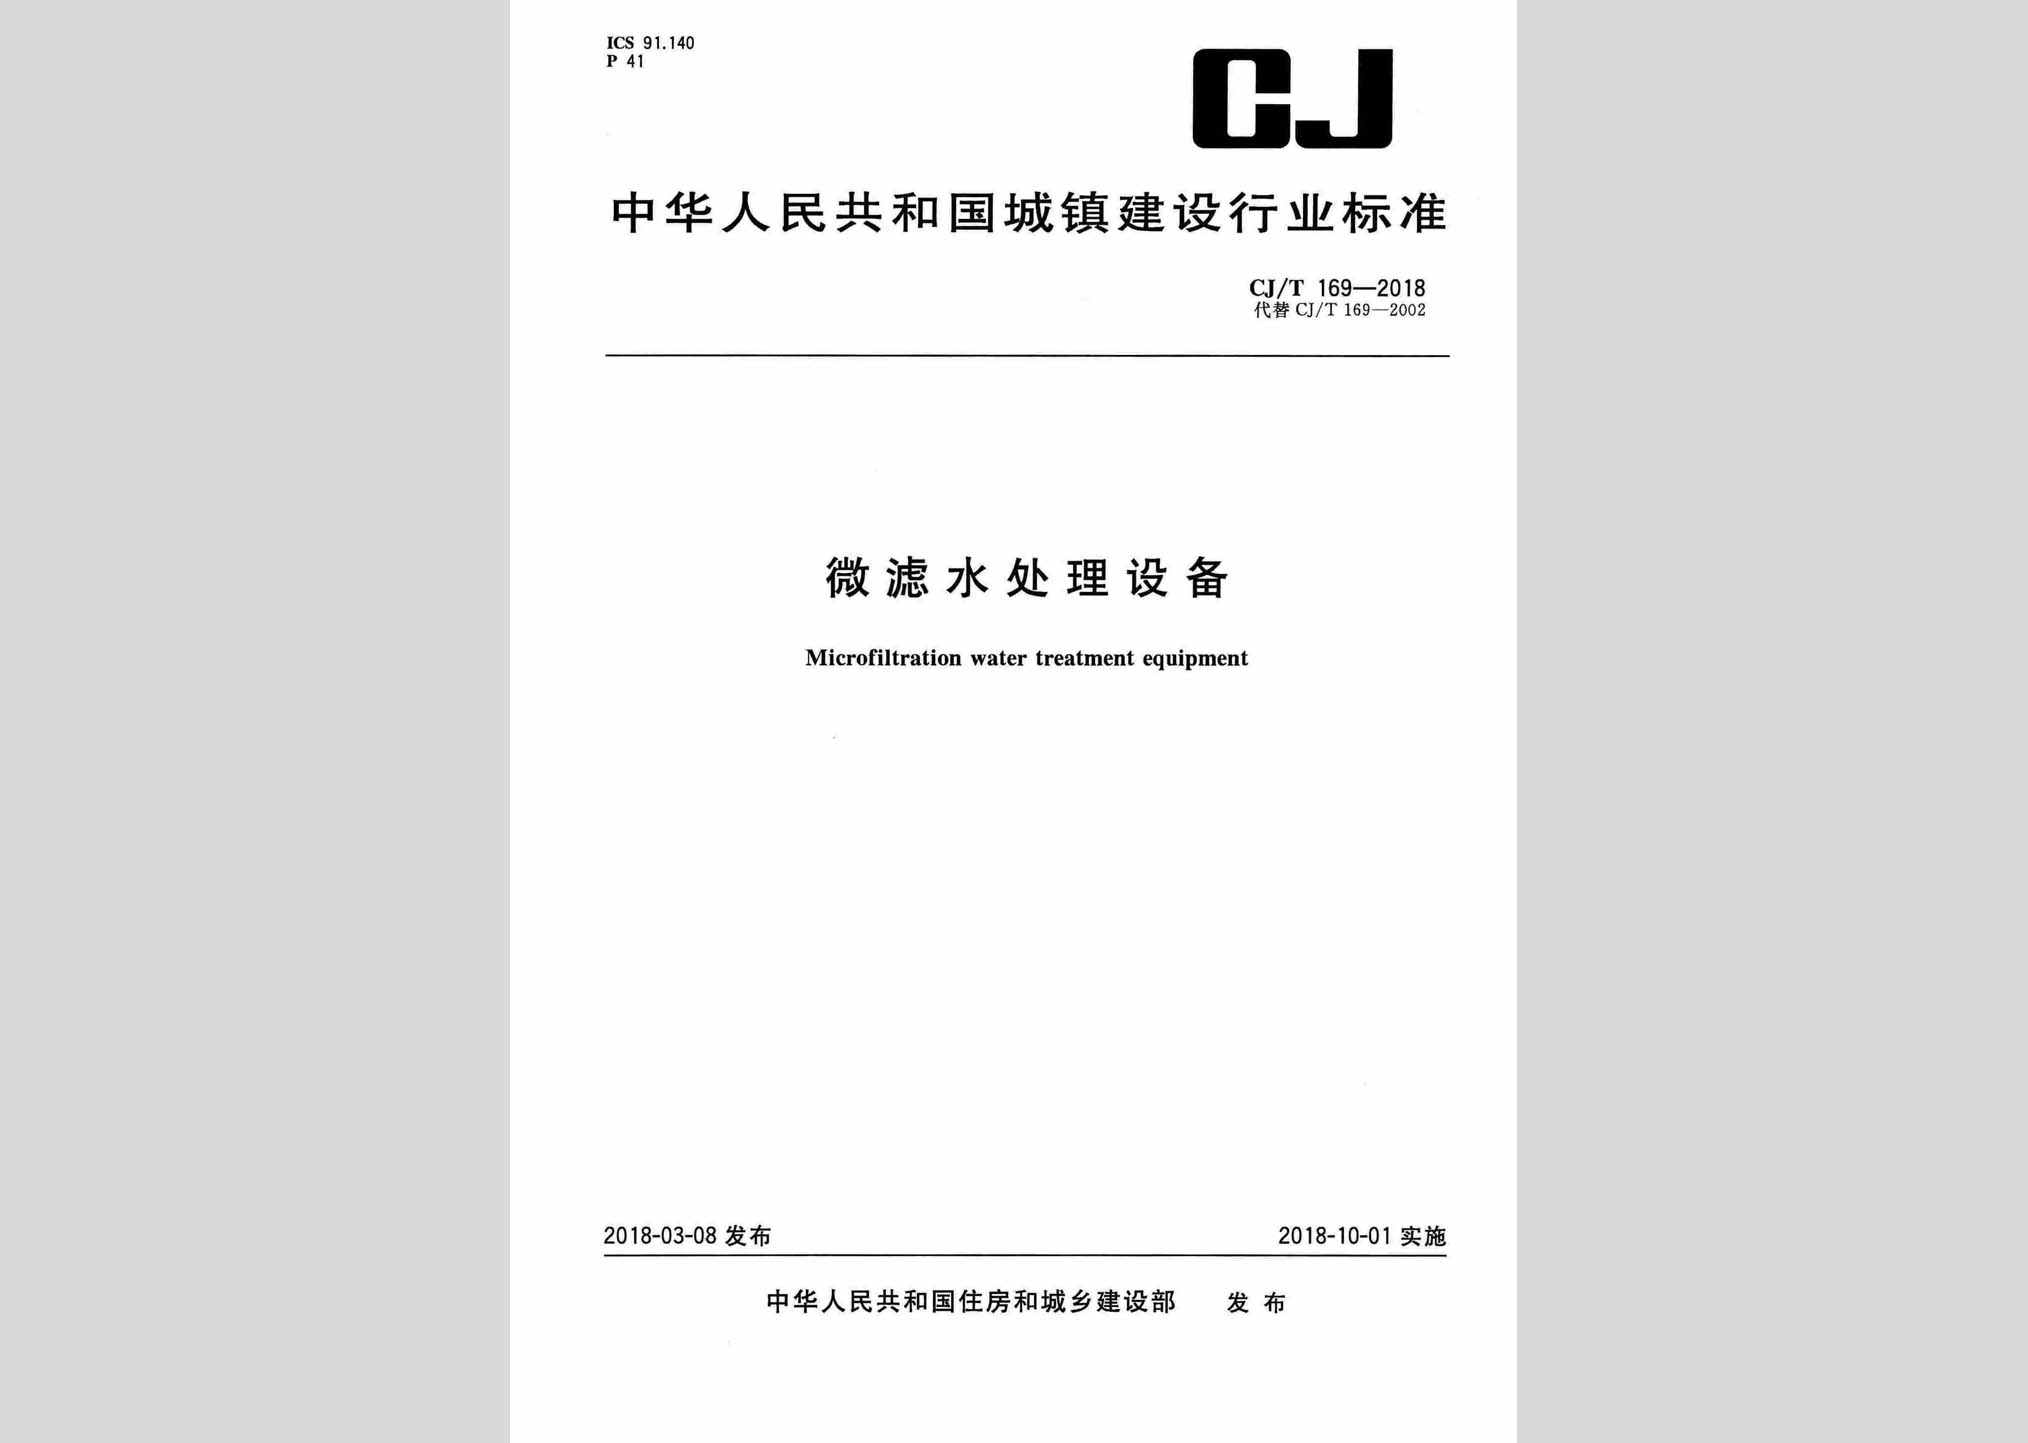 CJ/T169-2018：微滤水处理设备